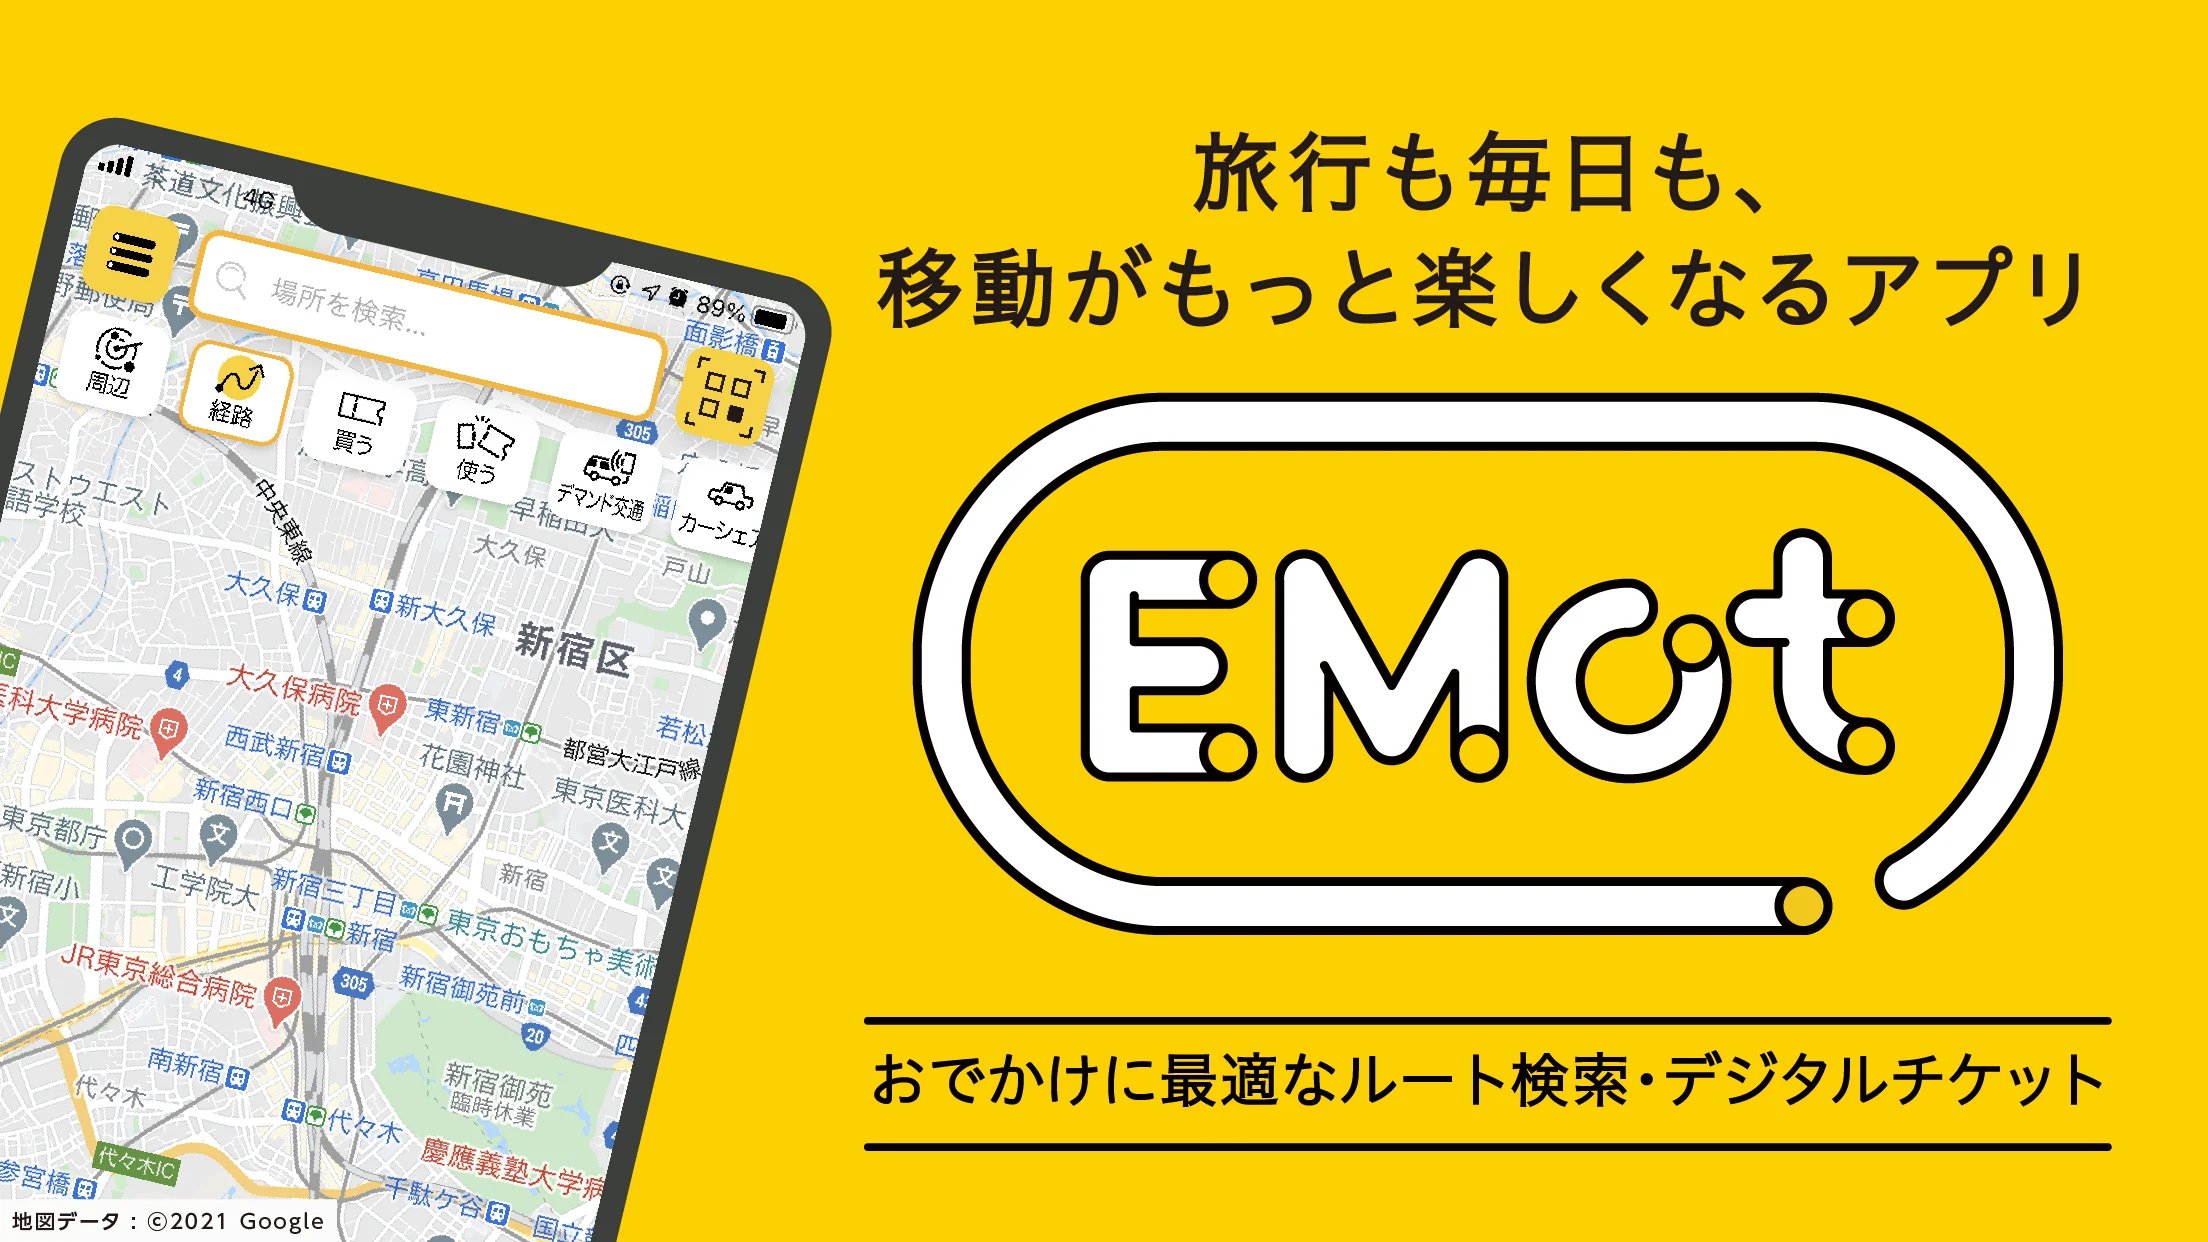 小田急電鉄「Emot」